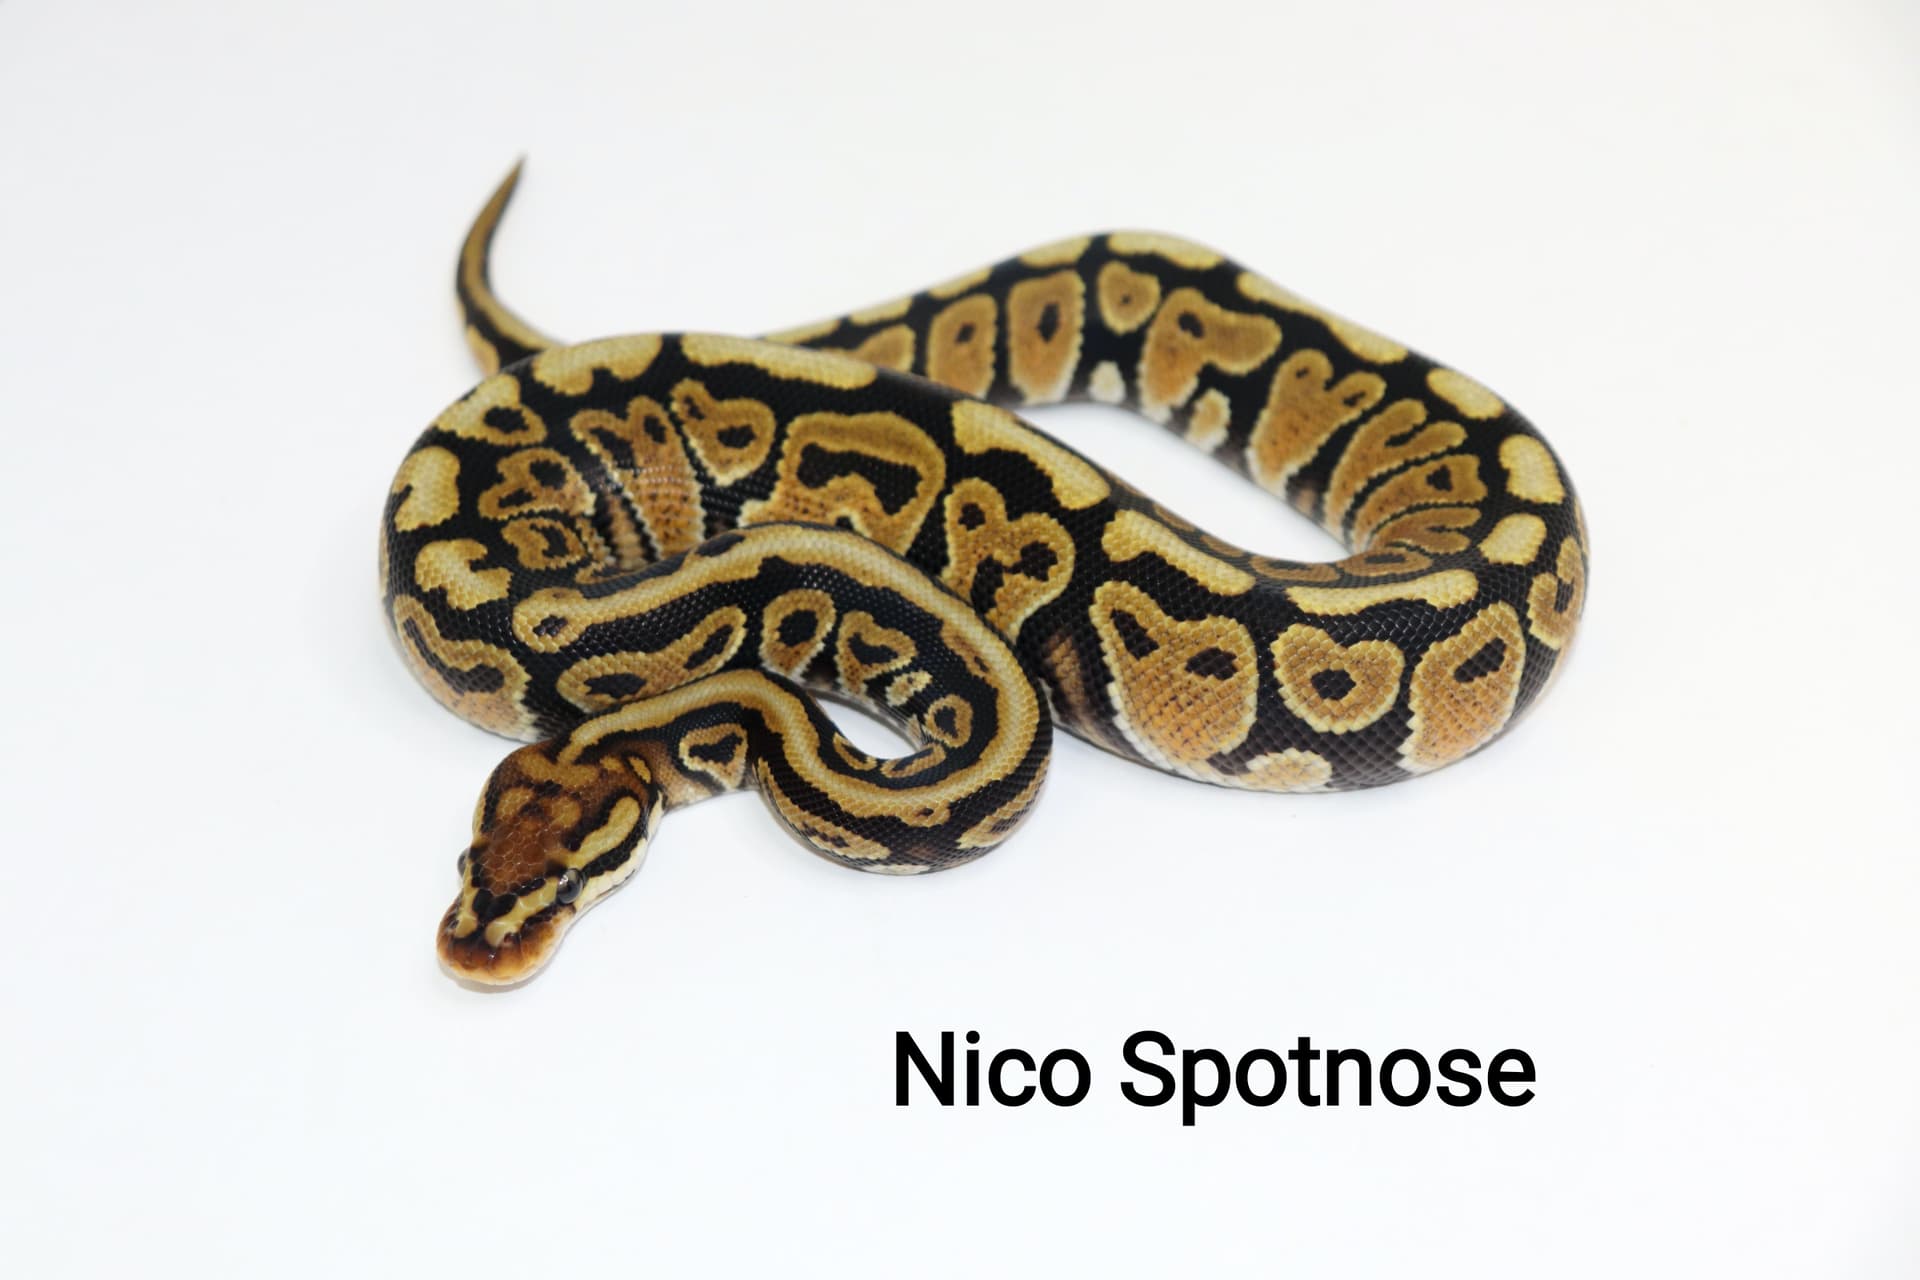 Spotnose Nico by DNJ Pythons